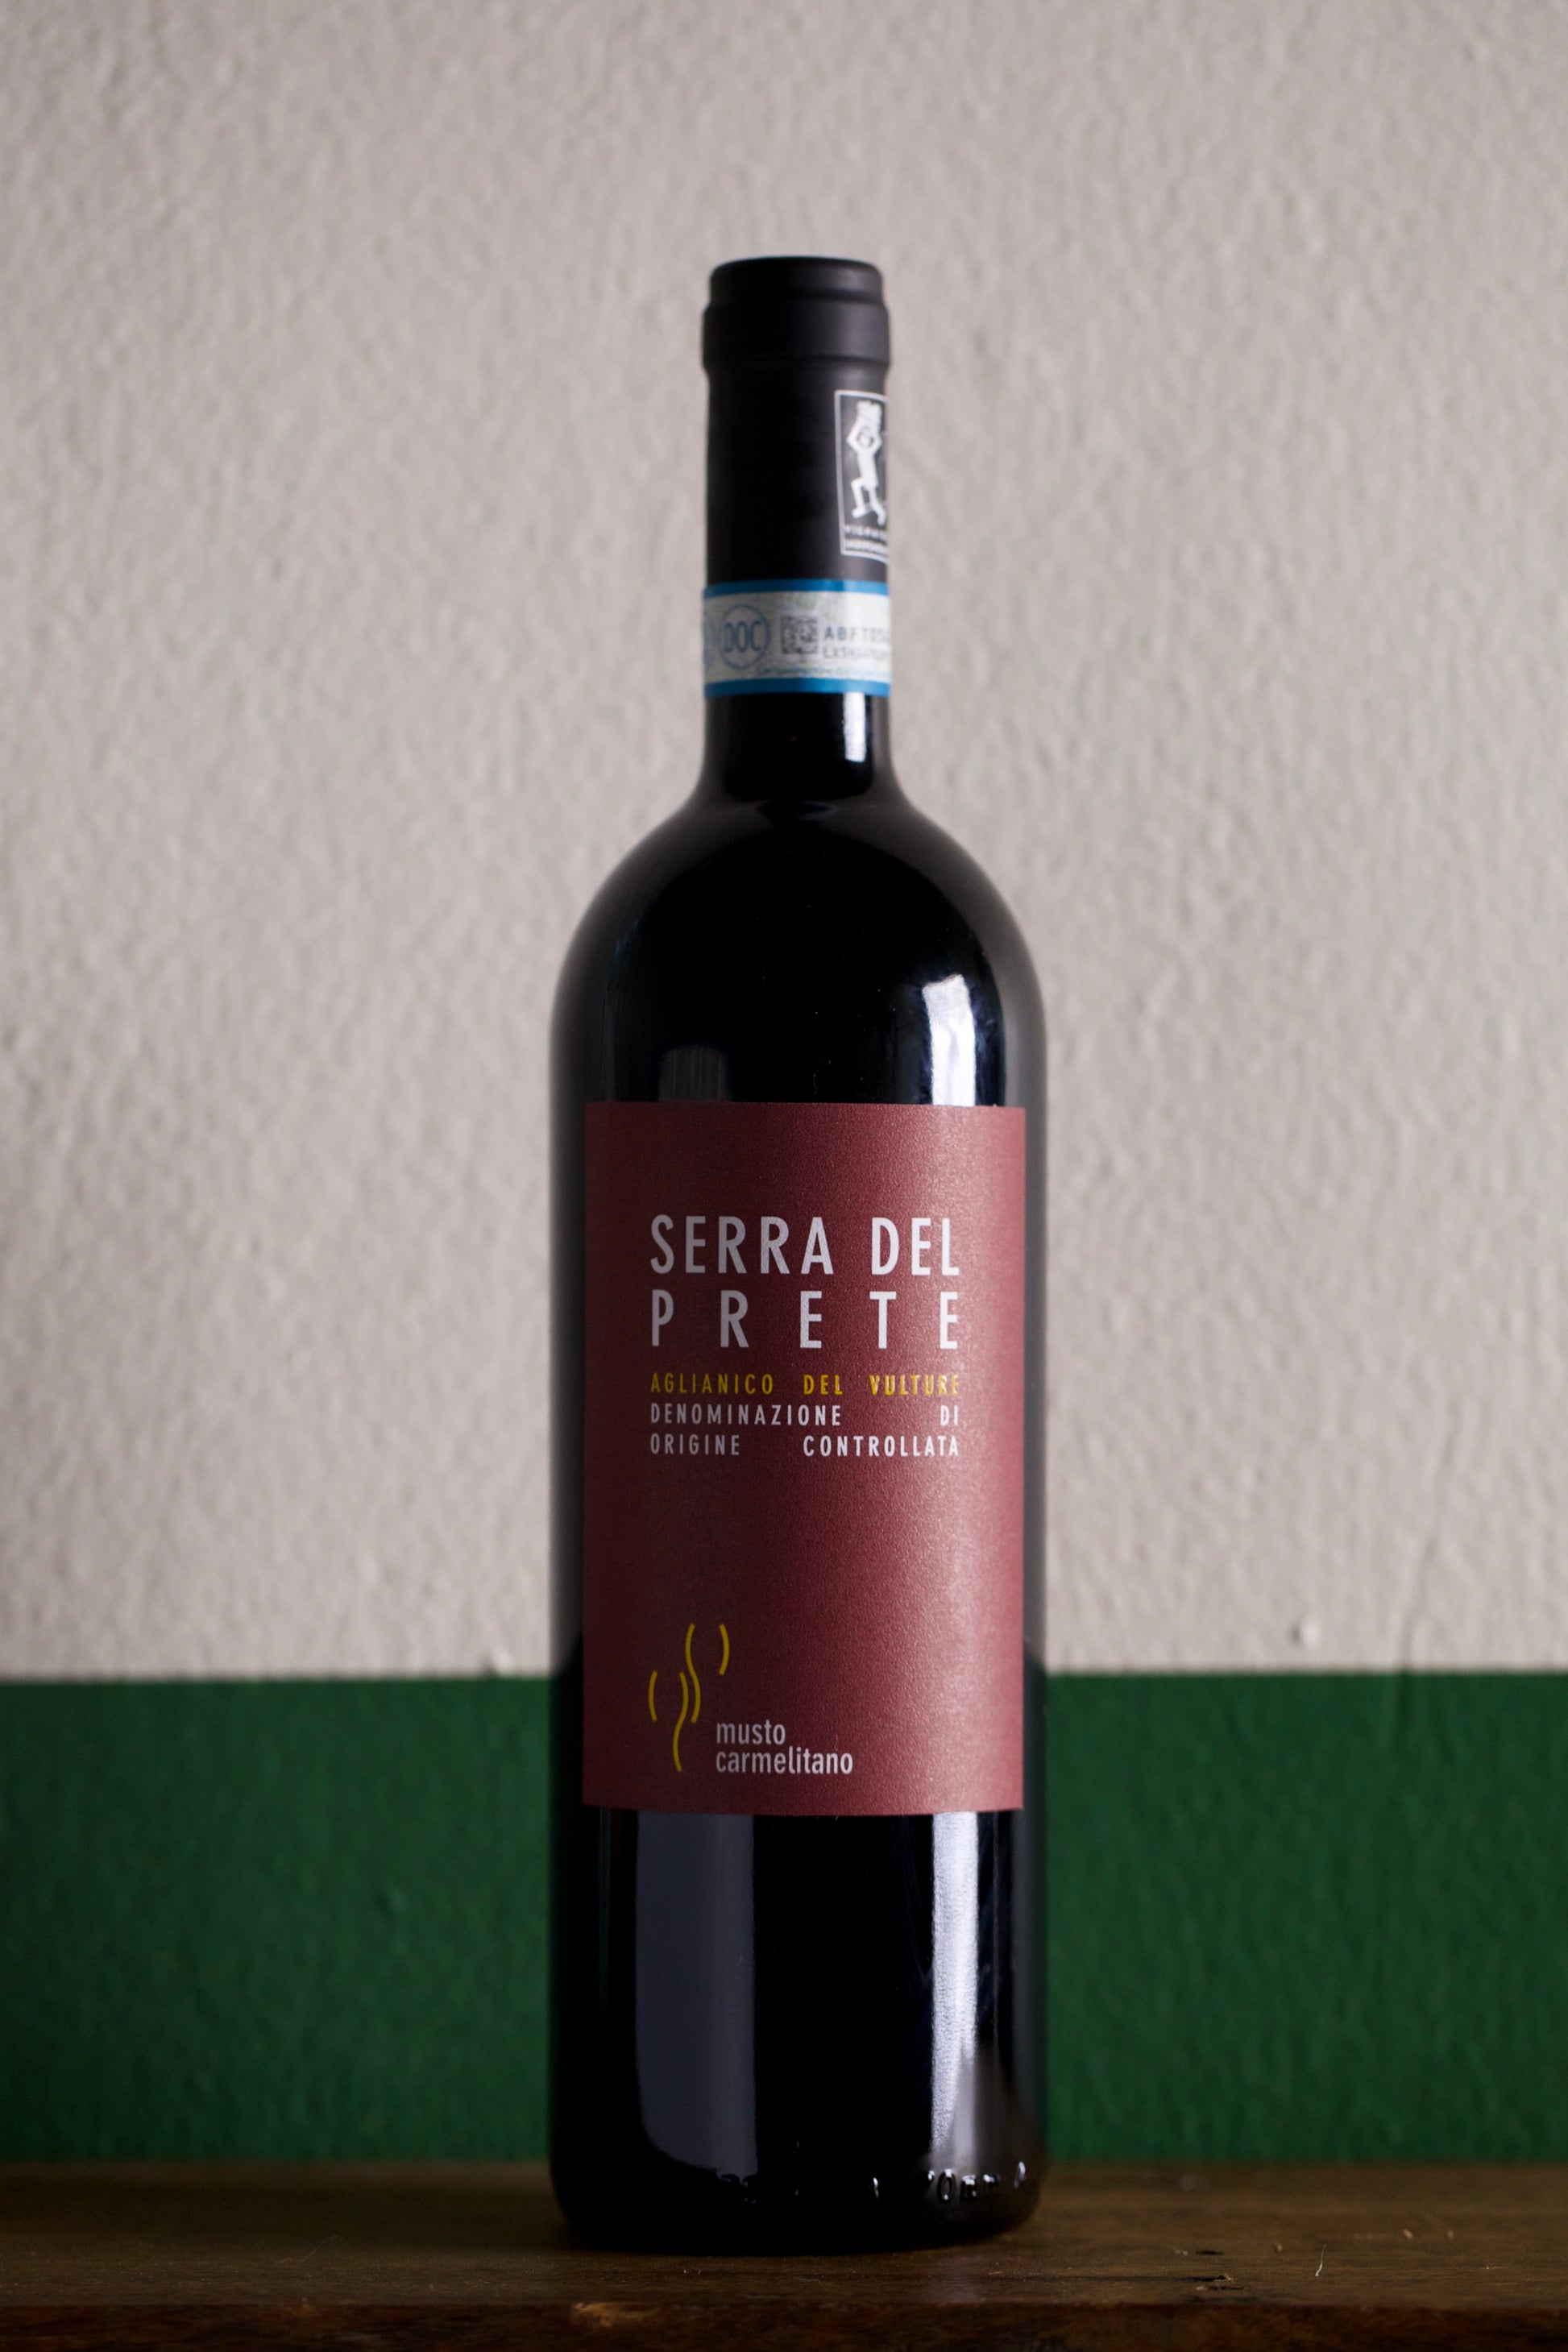 Bottle of Musto Carmelitano 'Serra del Prete' Aglianico del Vulture 2016 750ml